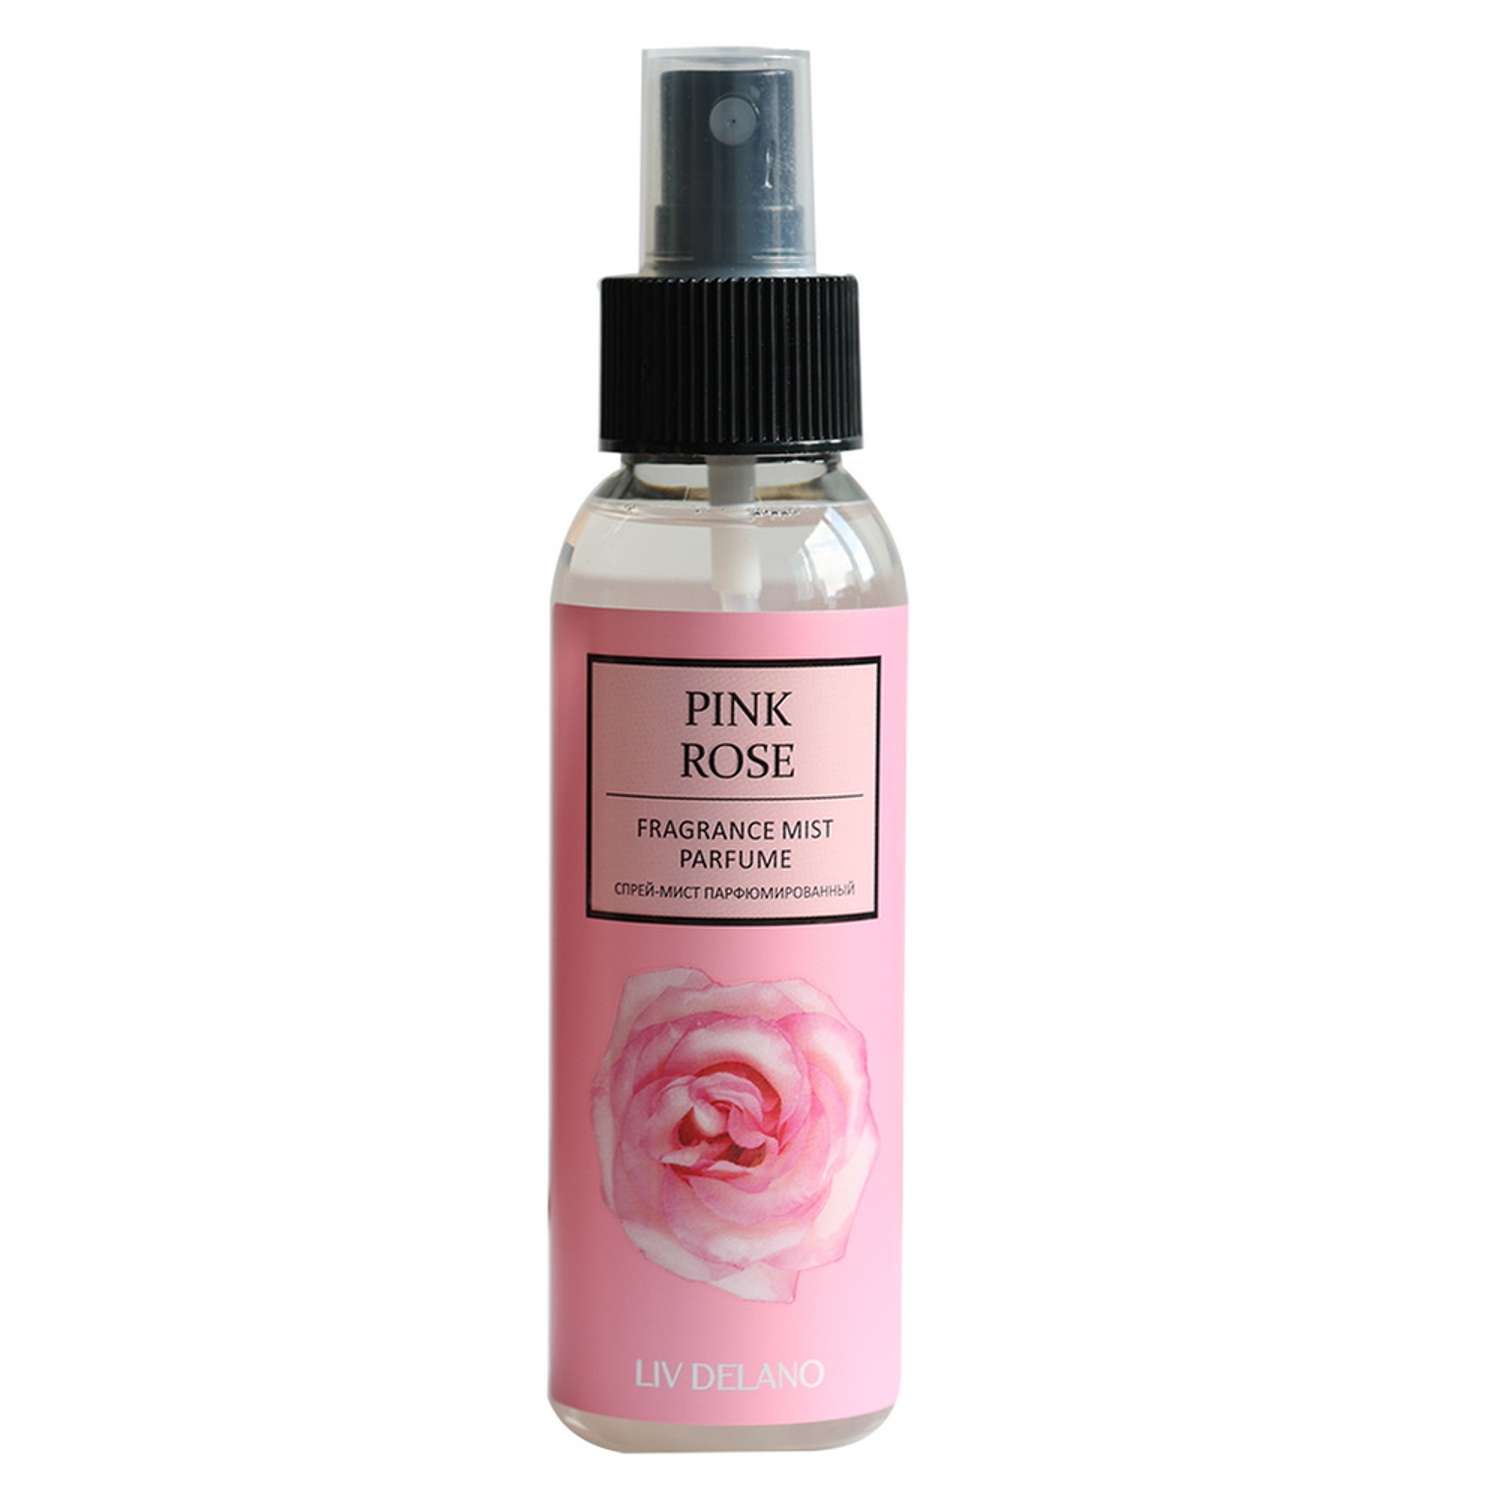 Спрей-мист для тела LIV DELANO Fragrance mist parfume Парфюмированный Pink Rose 100 мл - фото 1